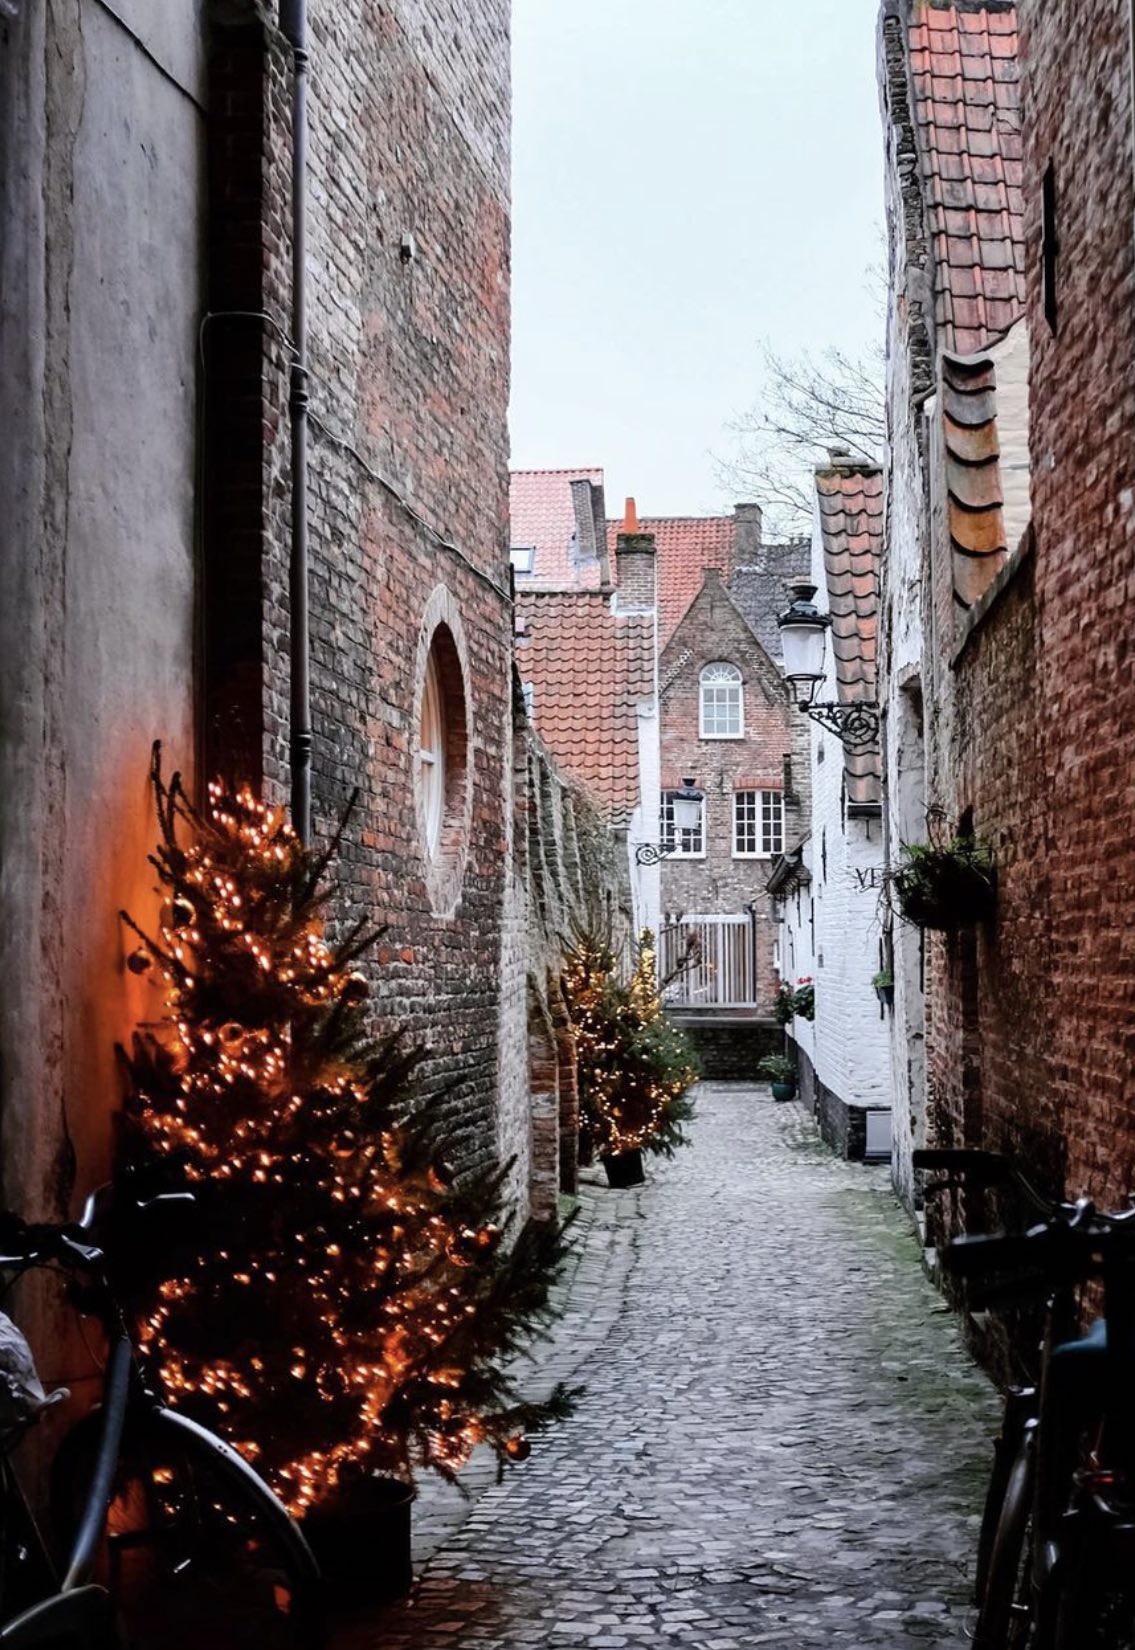 Bruges at Christmas // Photo credit @mskevin